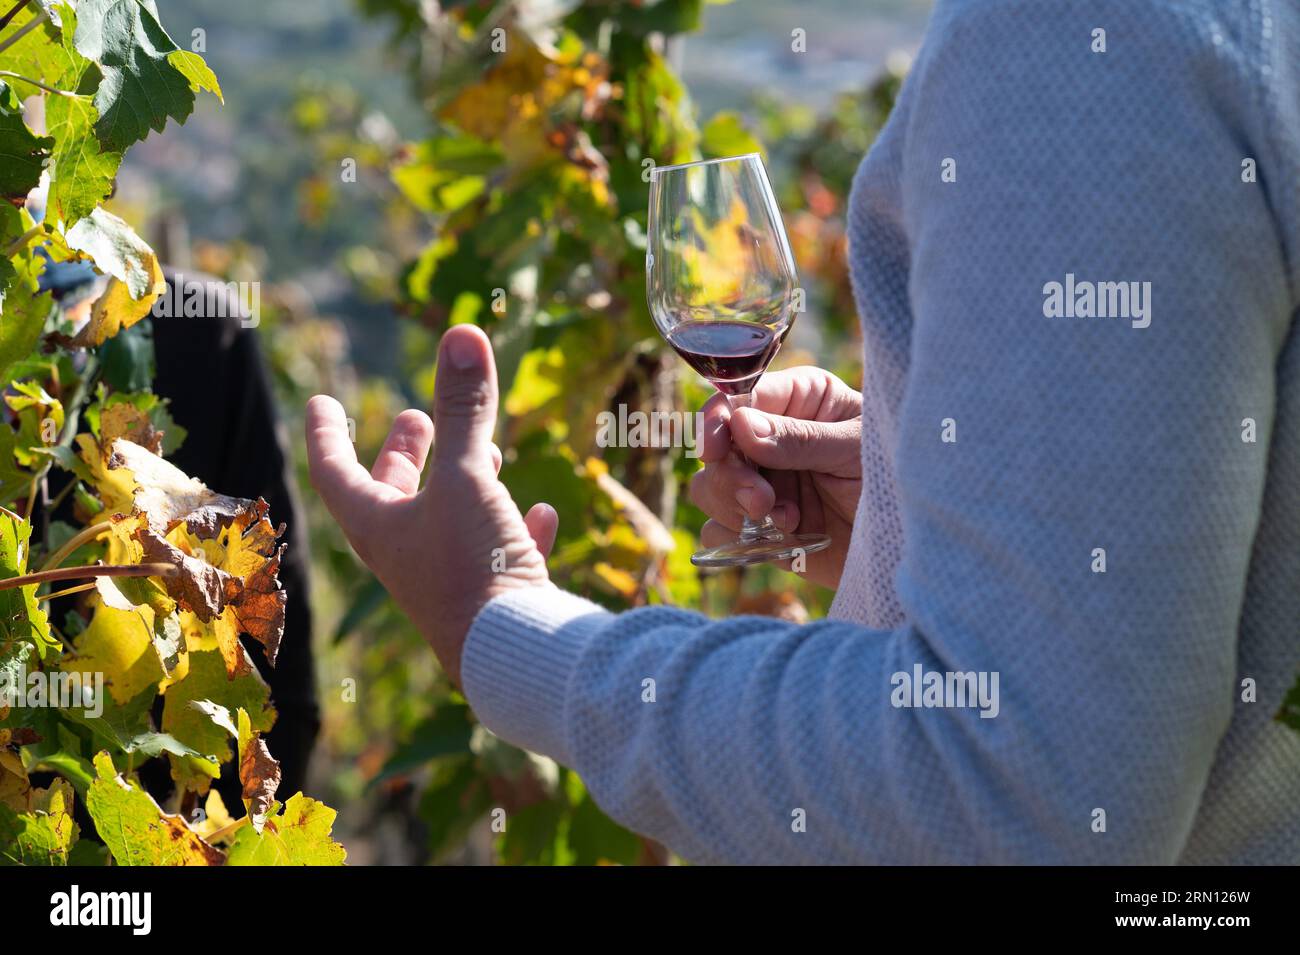 Cornas (sud-est de la France) : balade en minibus Renault vintage et dégustation de vins avec le vigneron Remy Nodin au milieu des vignes. Vignobles et discove Banque D'Images